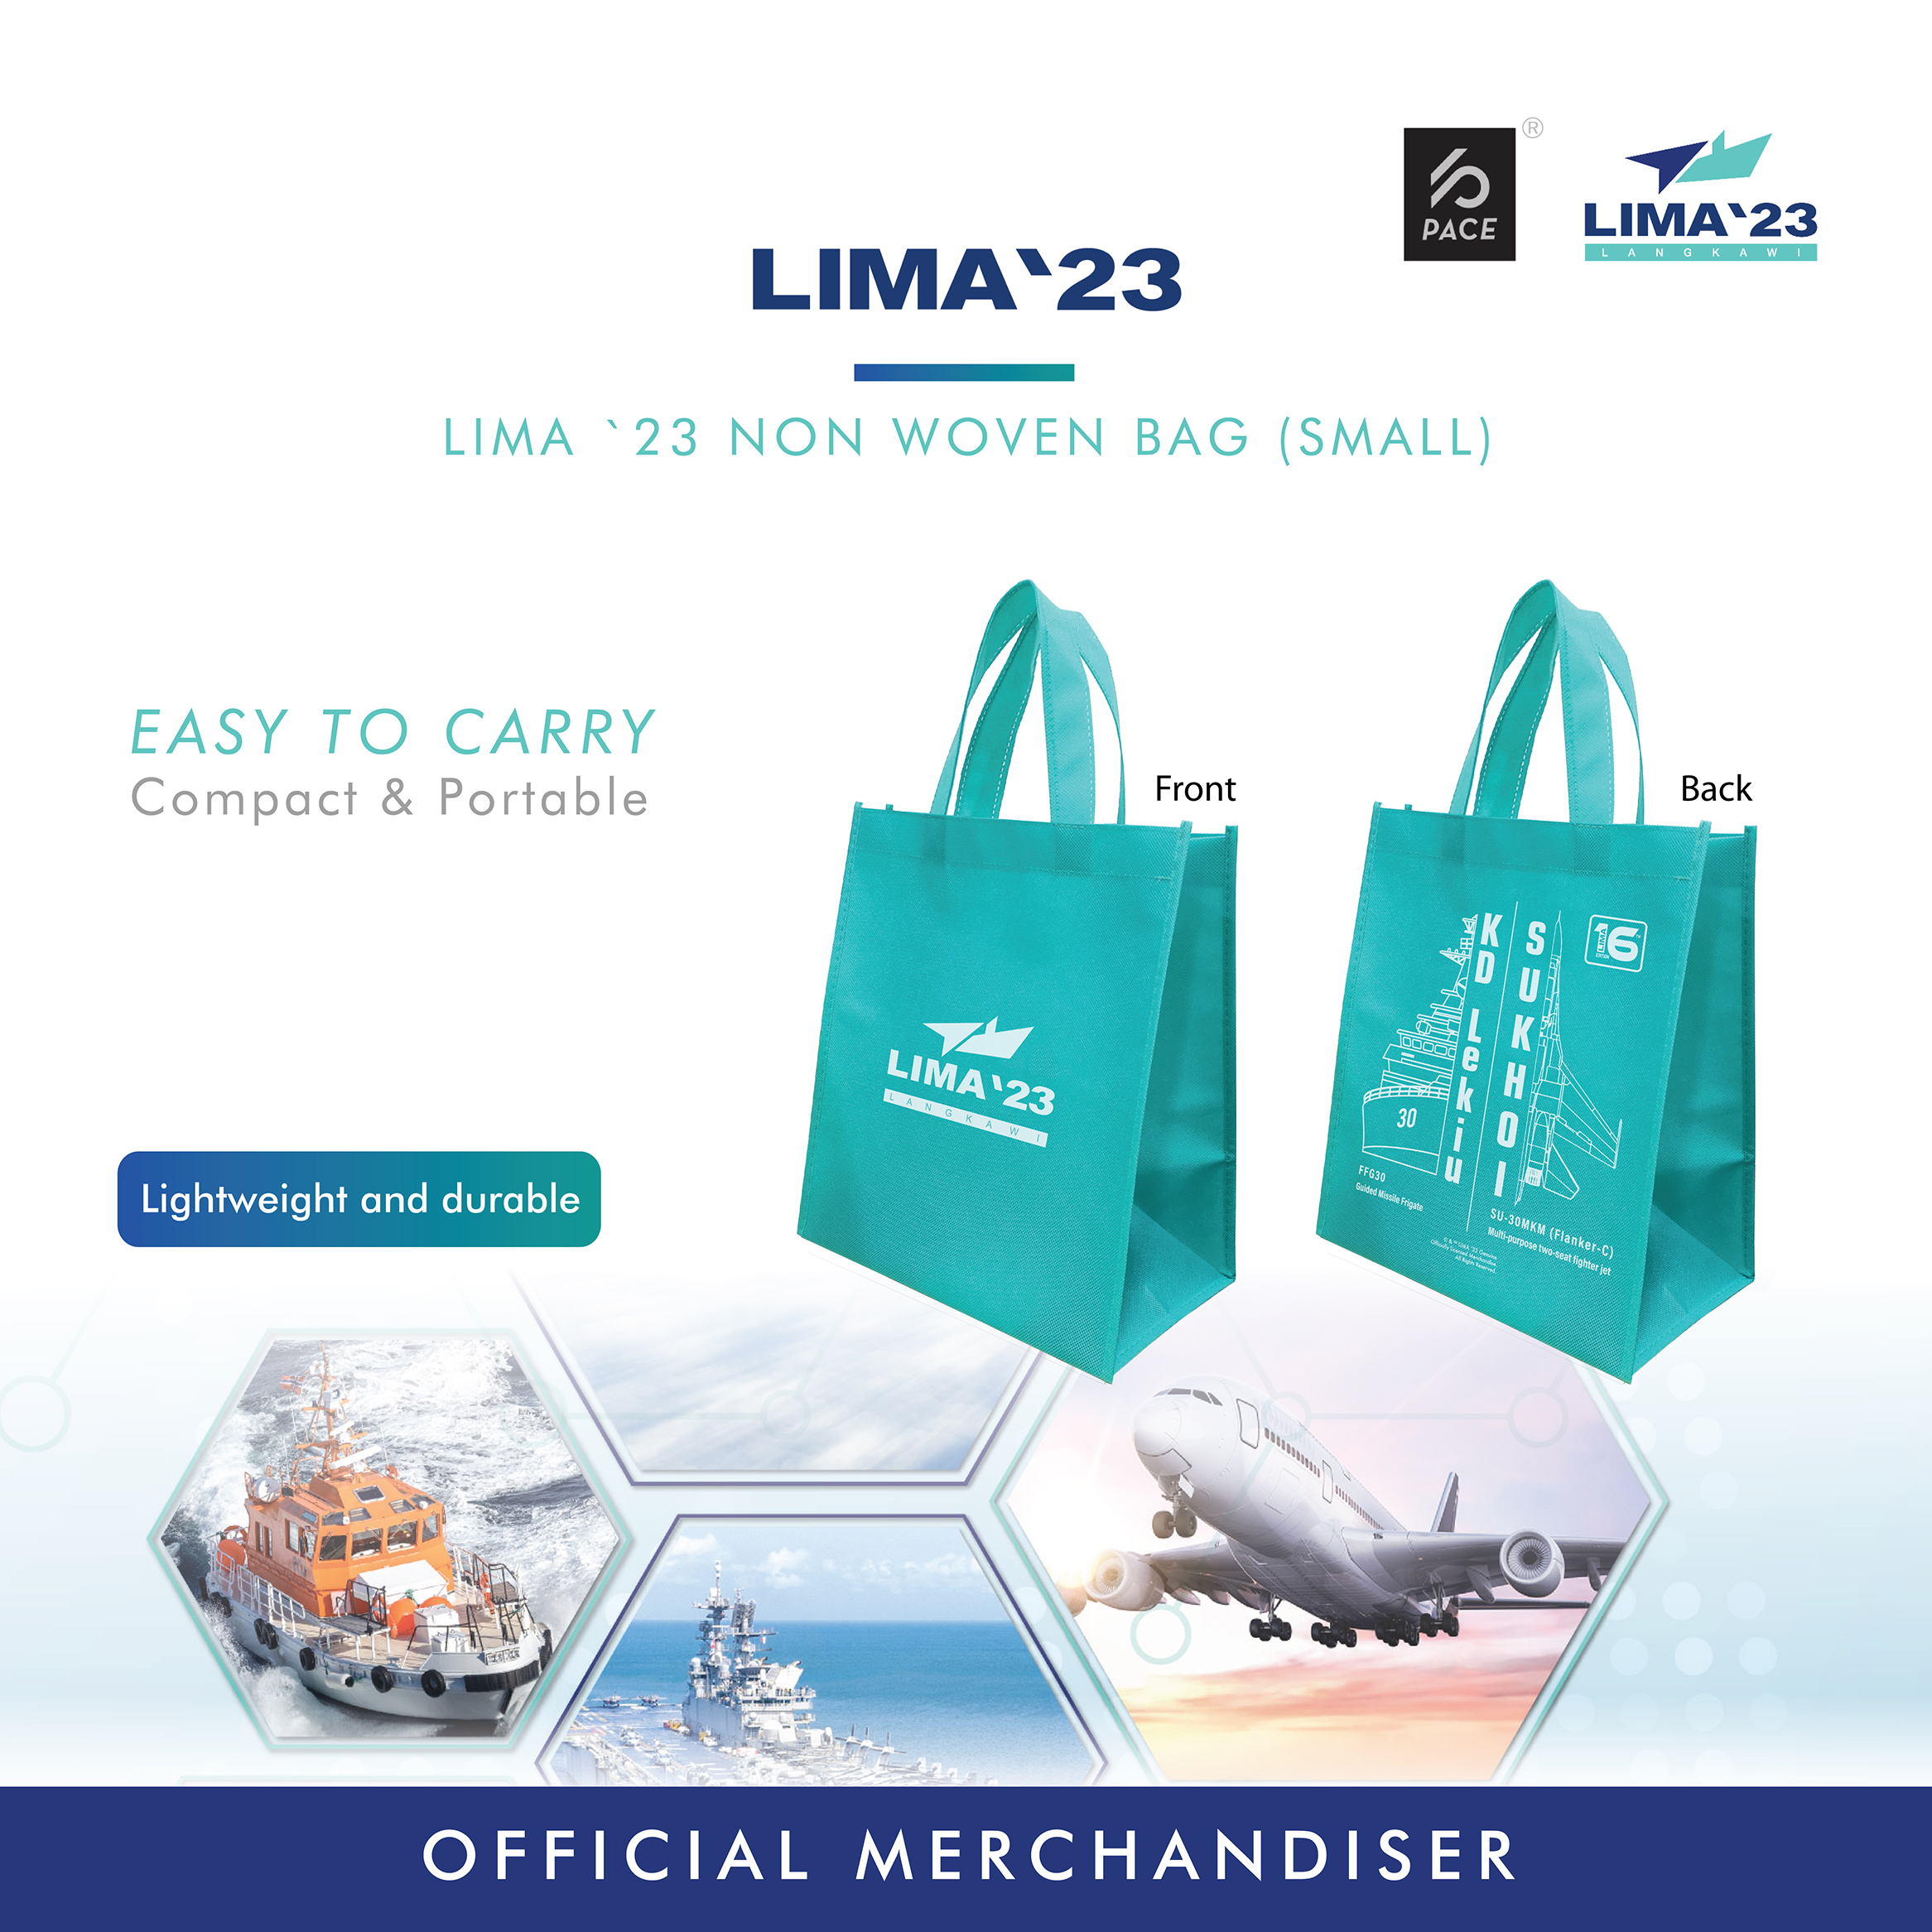 LIMA23 Non woven bag (Small)